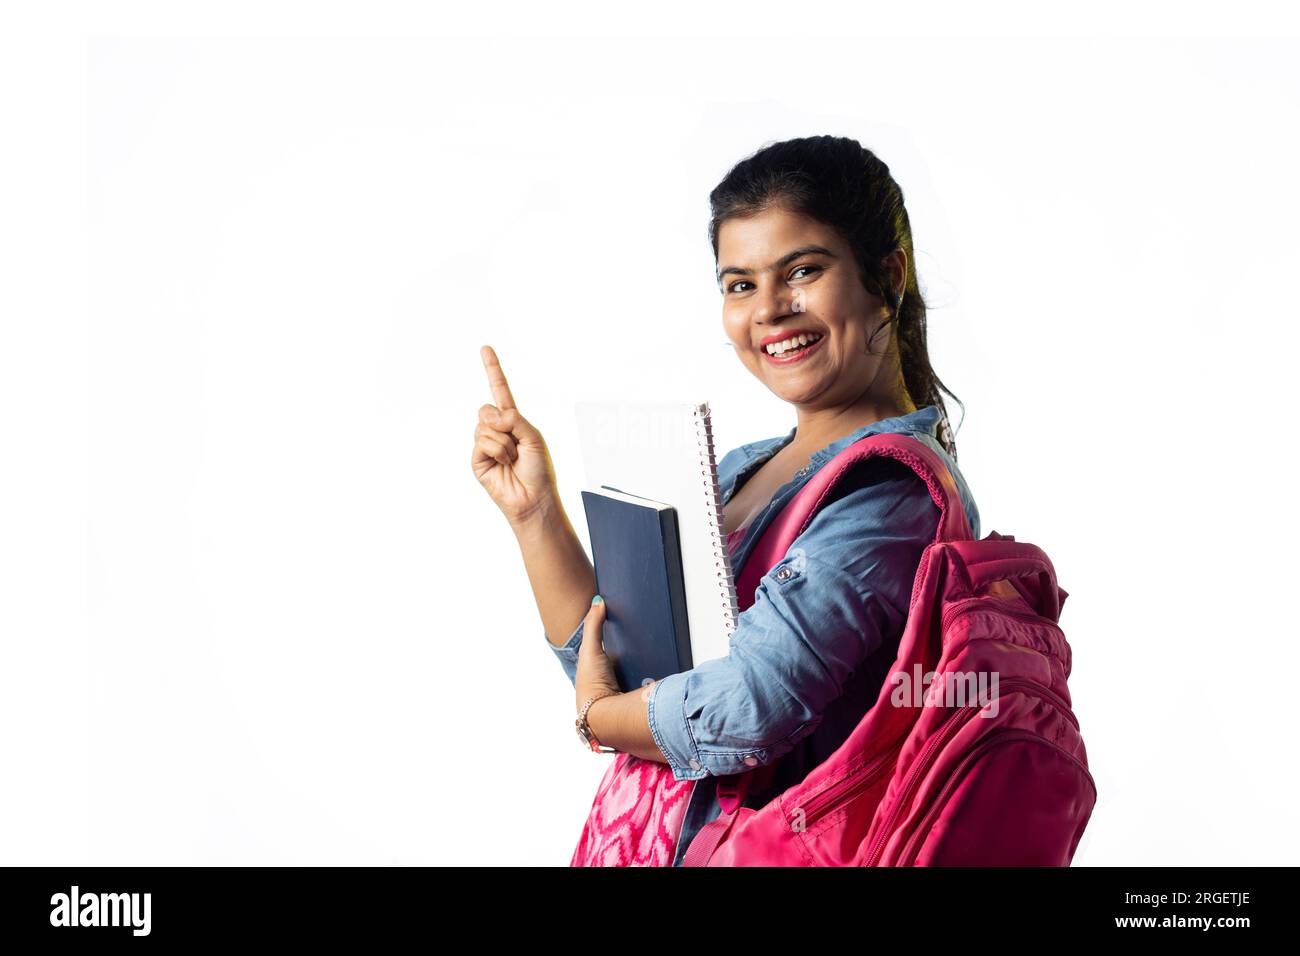 Une jolie jeune fille indienne avec des livres à la main et sac à dos pointant avec le visage souriant sur fond blanc Banque D'Images